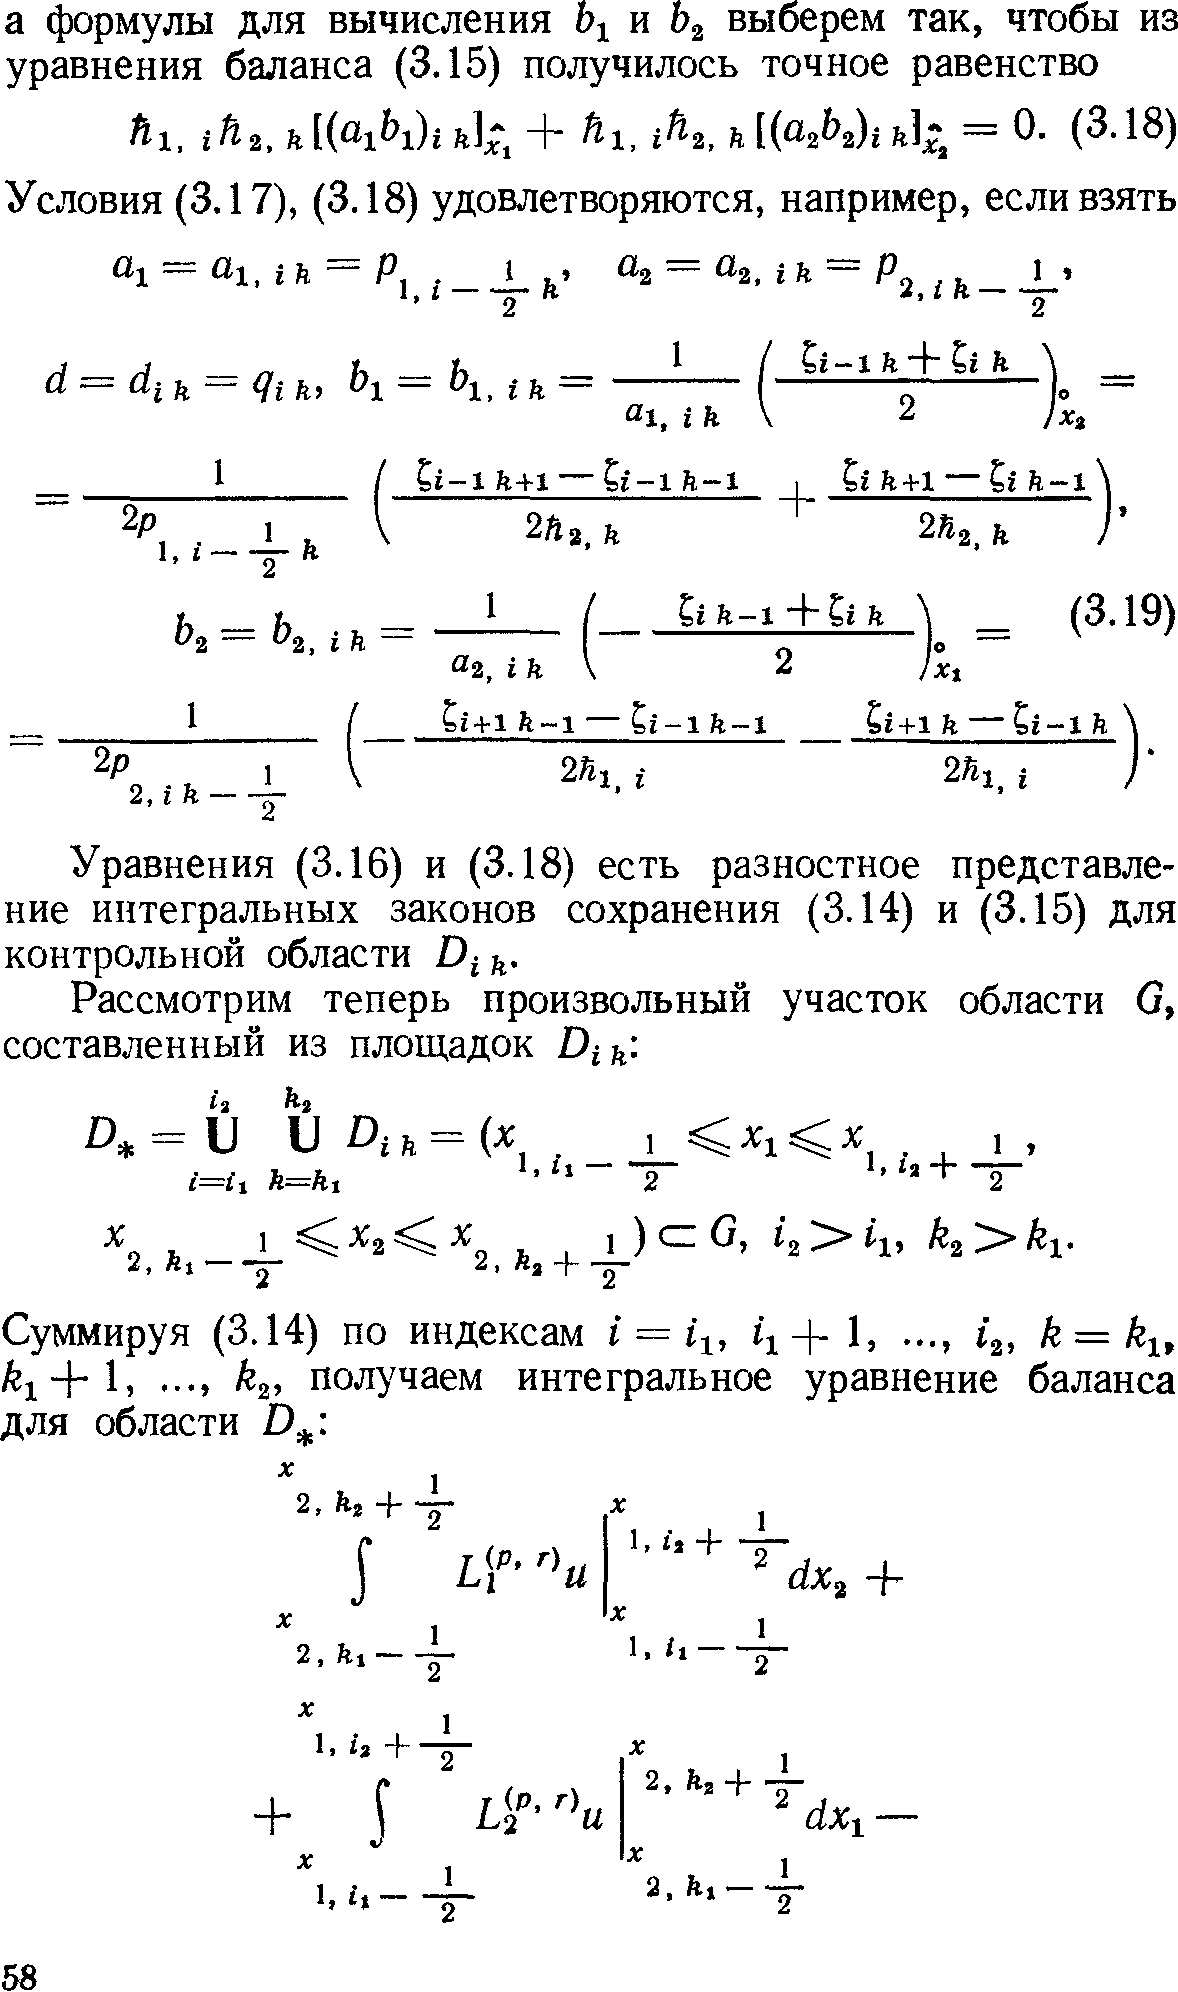 Уравнения (3.16) и (3.18) есть разностное представление интегральных законов сохранения (3.14) и (3.15) для контрольной области D й.
